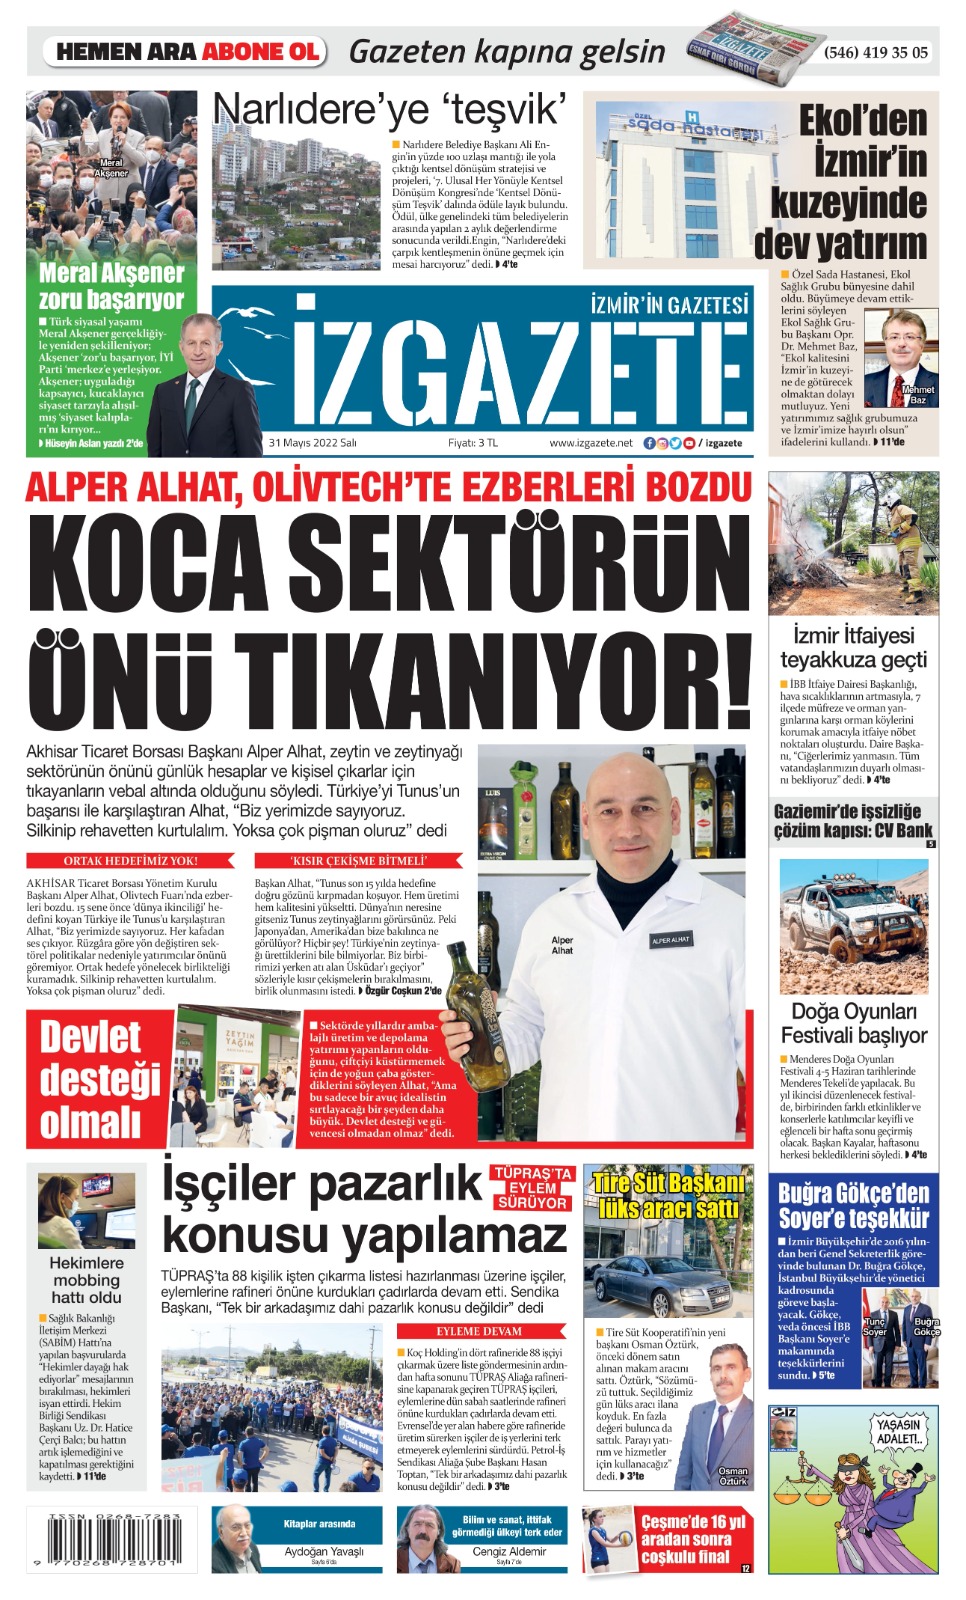 İz Gazete - İzmir'in Gazetesi - 31.05.2022 Manşeti